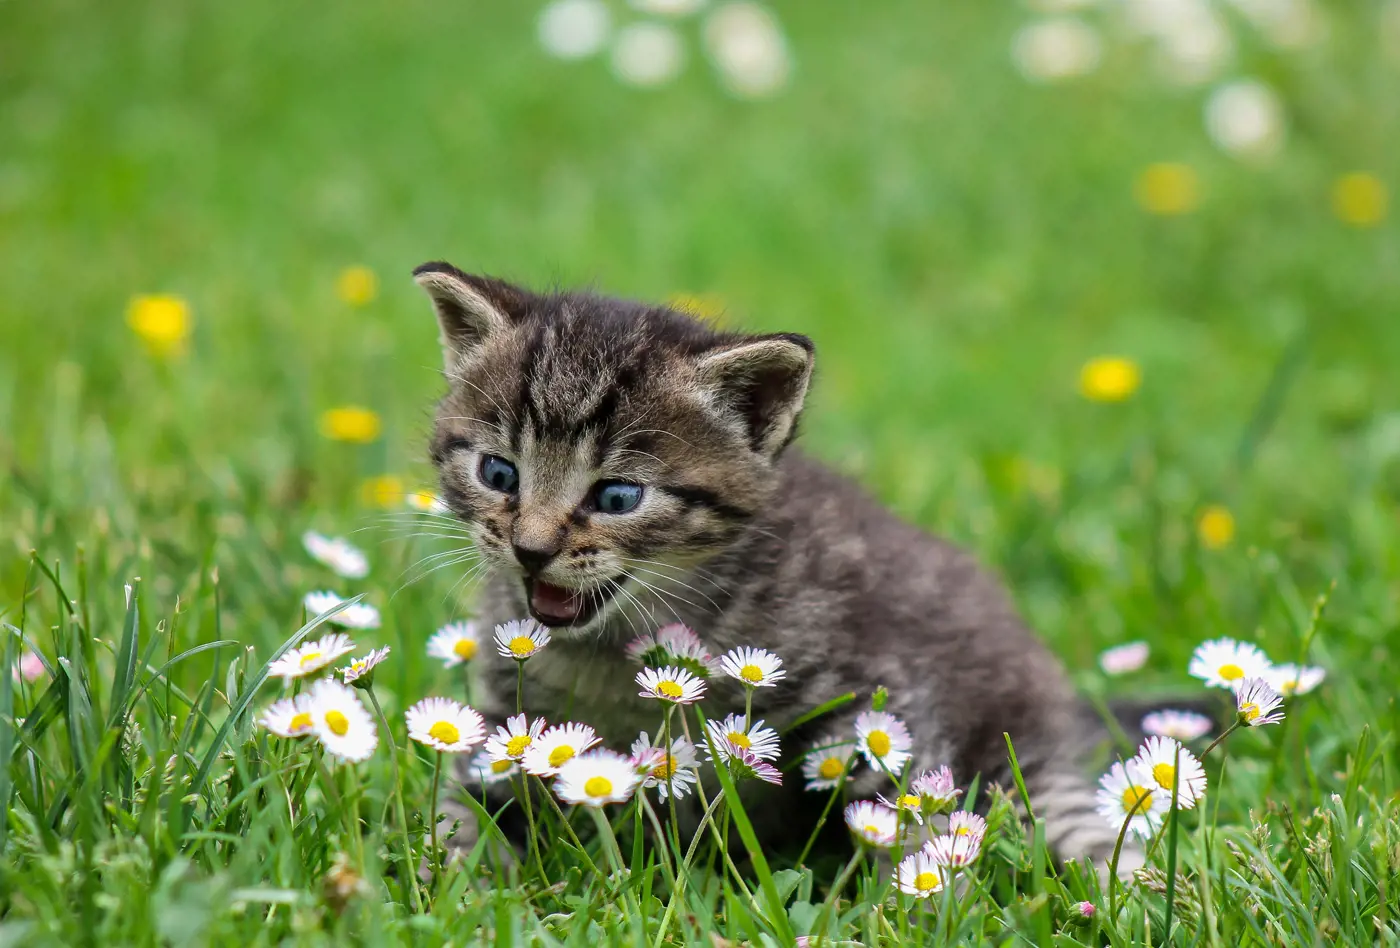 A kitten biting a daisy on a grass patch